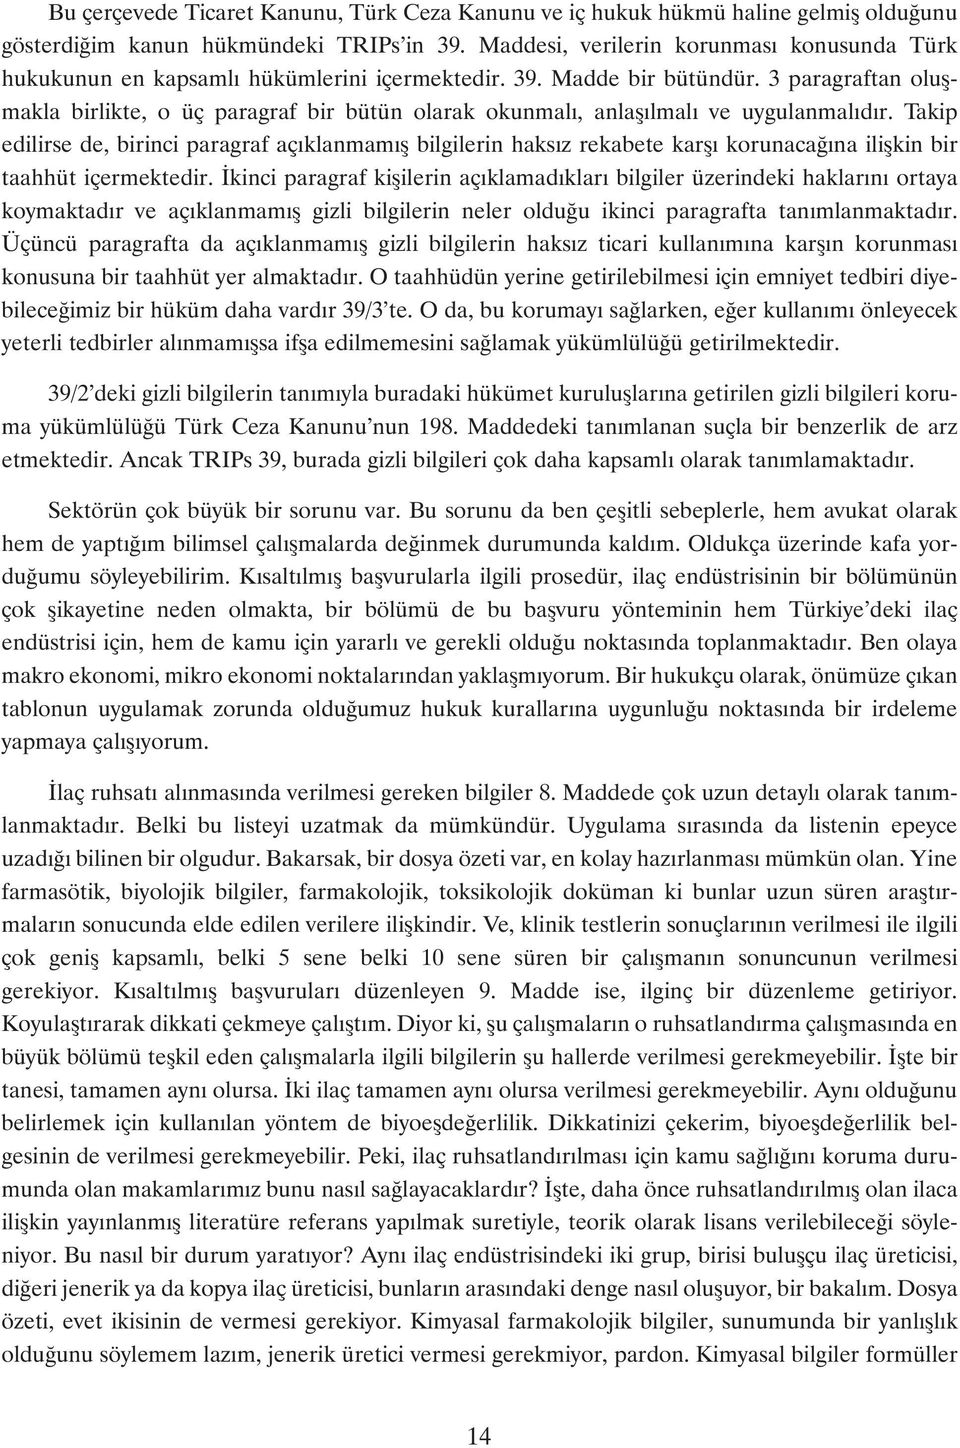 3 paragraftan oluþmakla birlikte, o üç paragraf bir bütün olarak okunmalý, anlaþýlmalý ve uygulanmalýdýr.